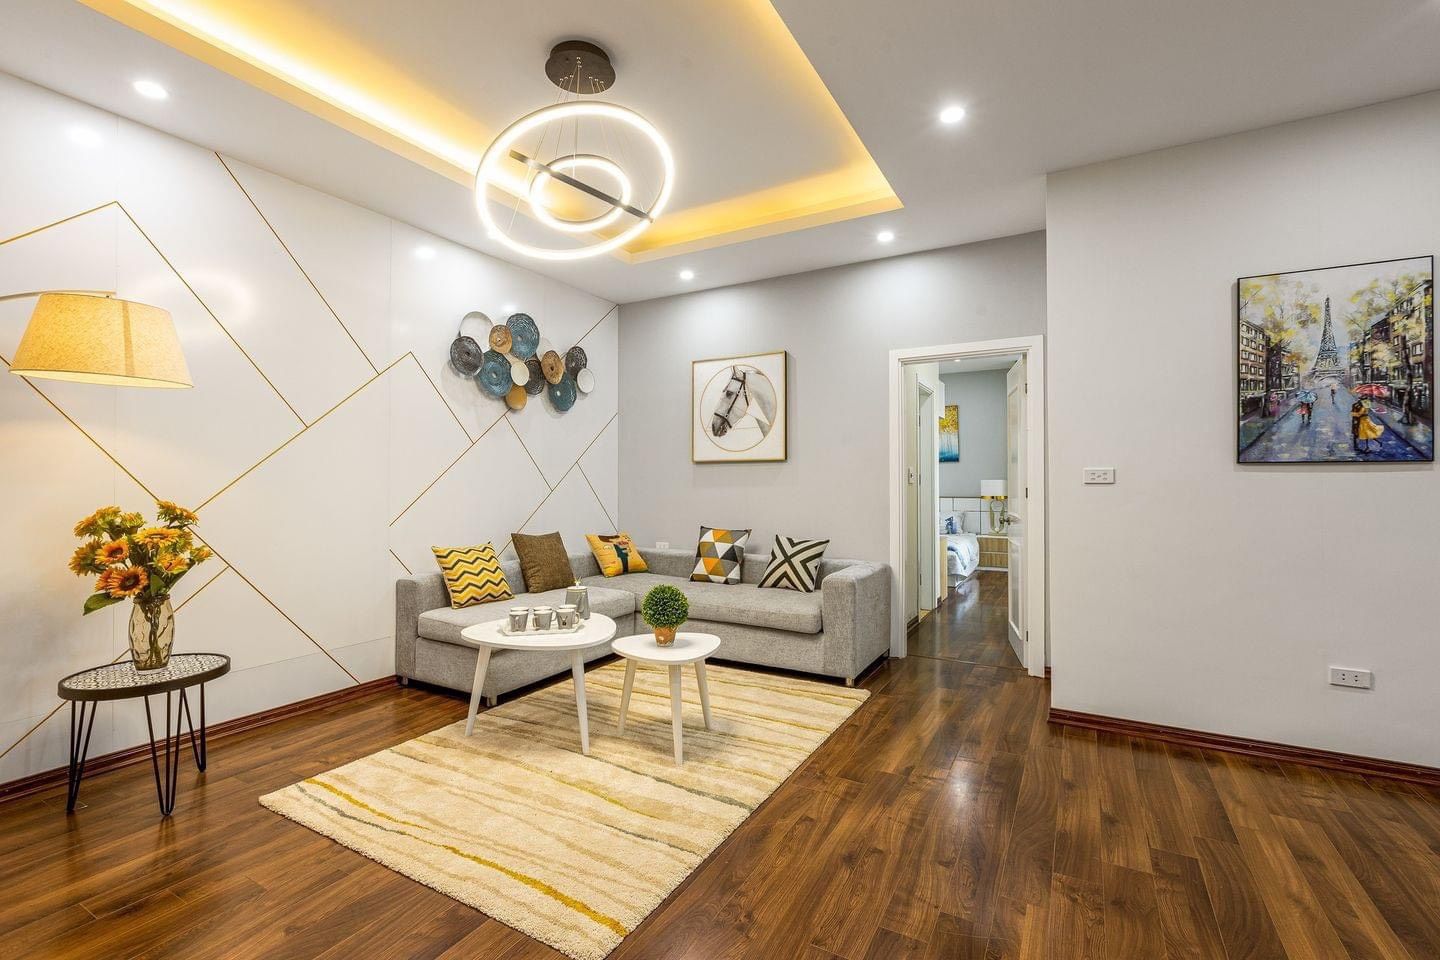 Giá căn hộ chung cư huyện Thanh Trì diện tích 100 - 150m2 đang bán bao nhiêu tiền 1m2